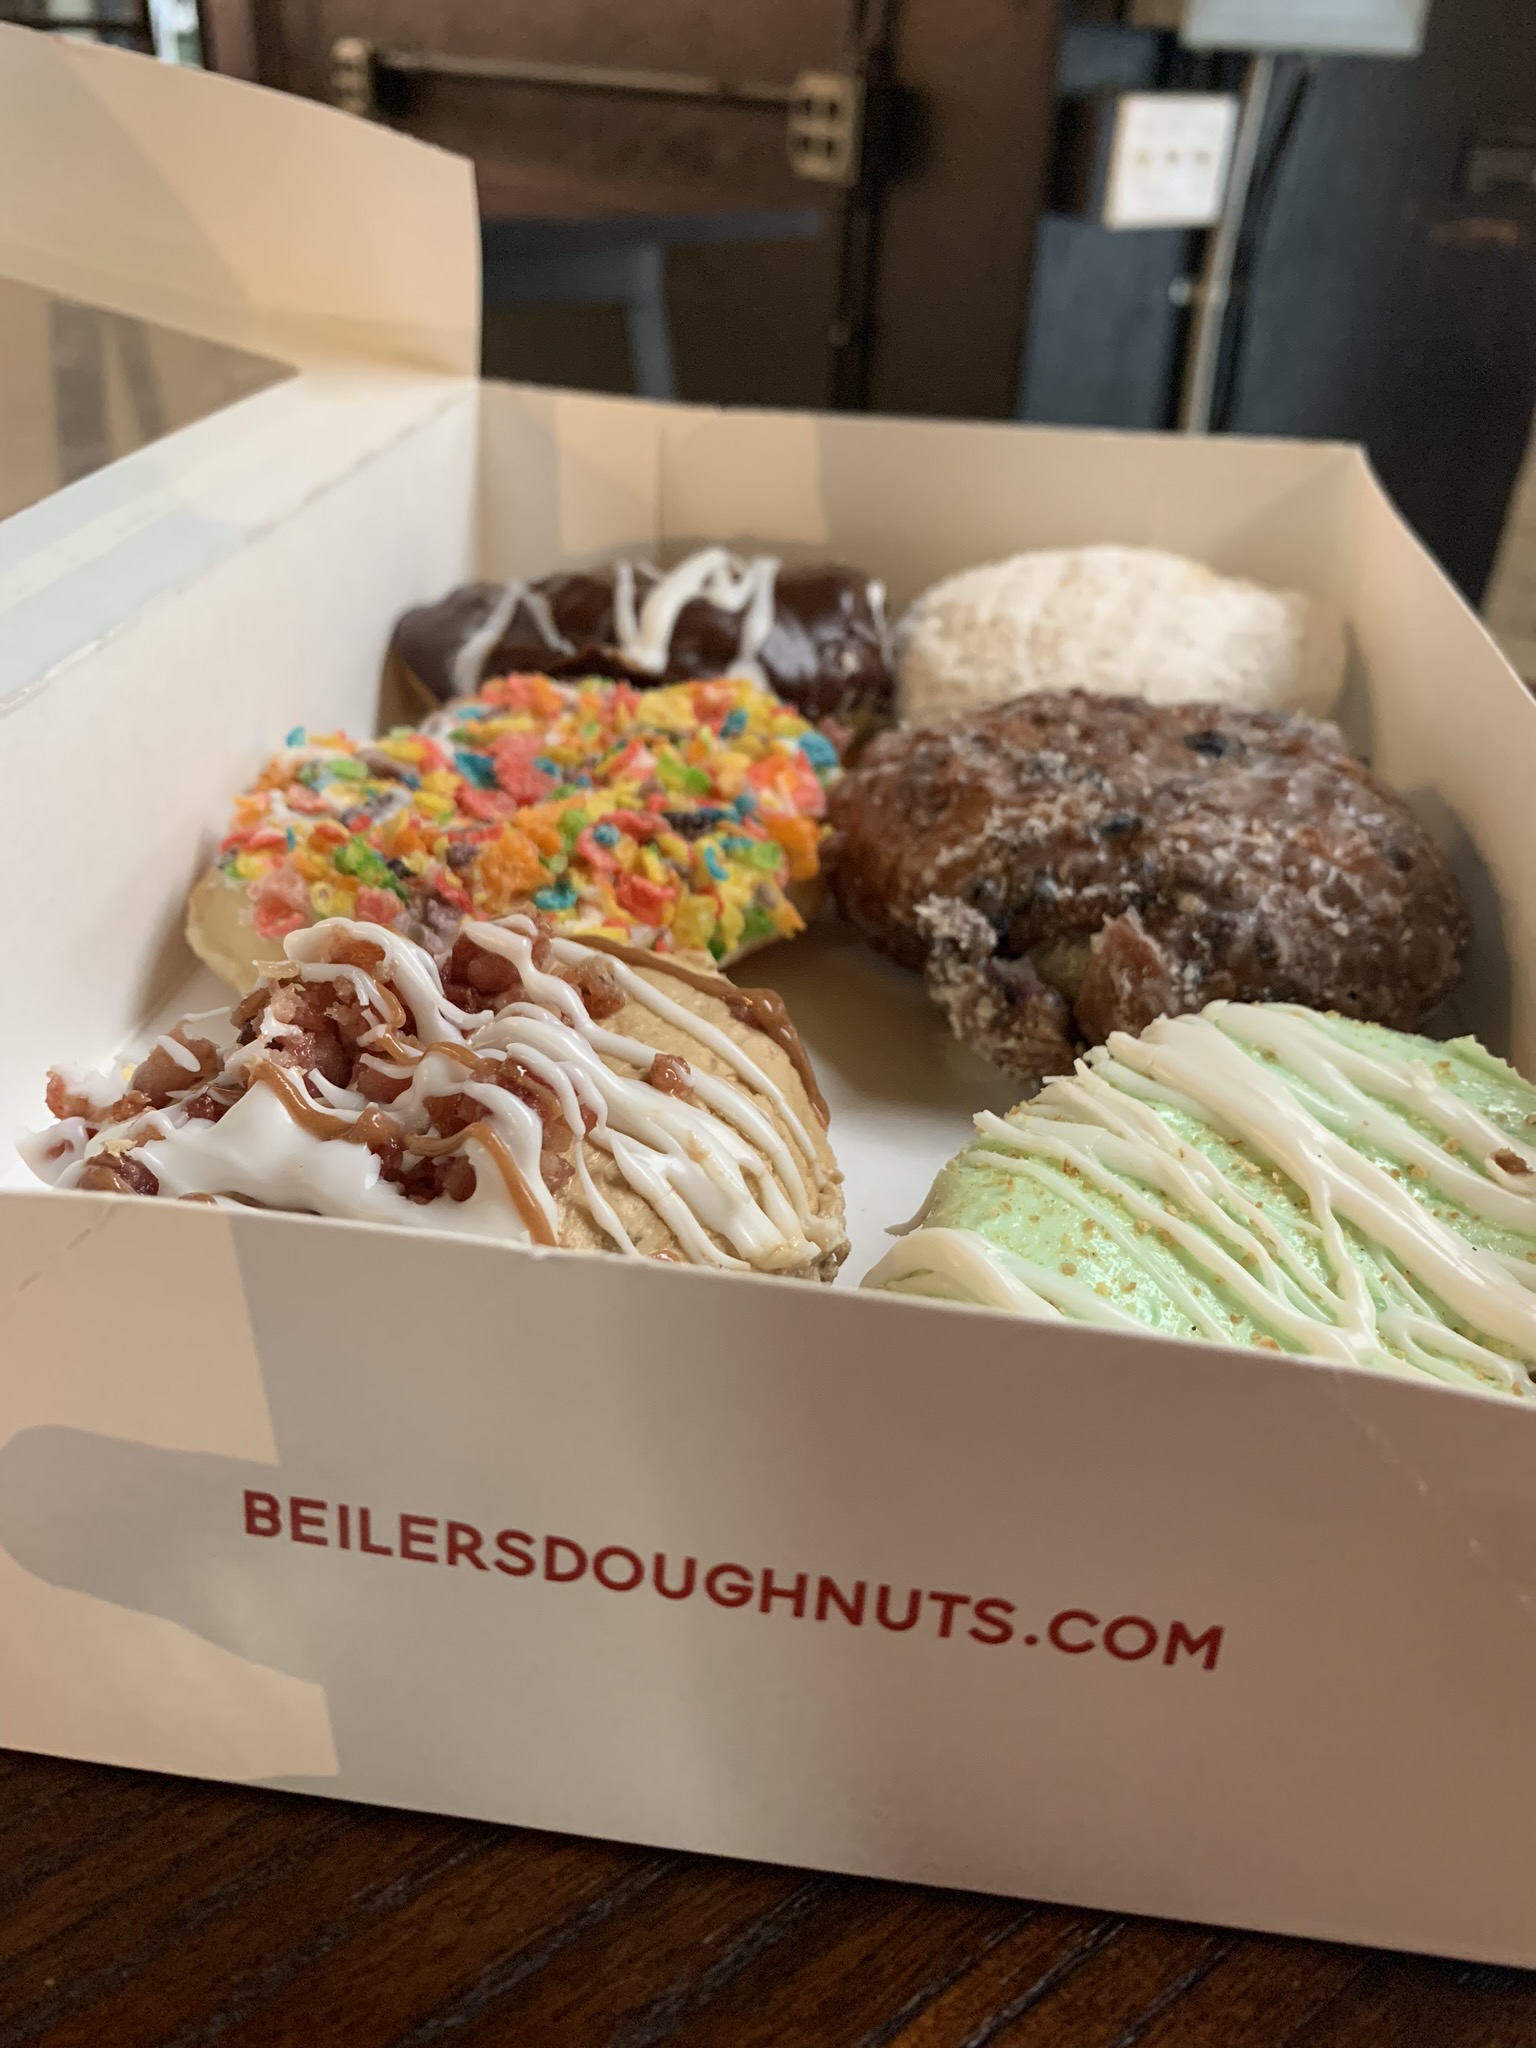 An assortment of six varieties of doughnuts from Beiler’s